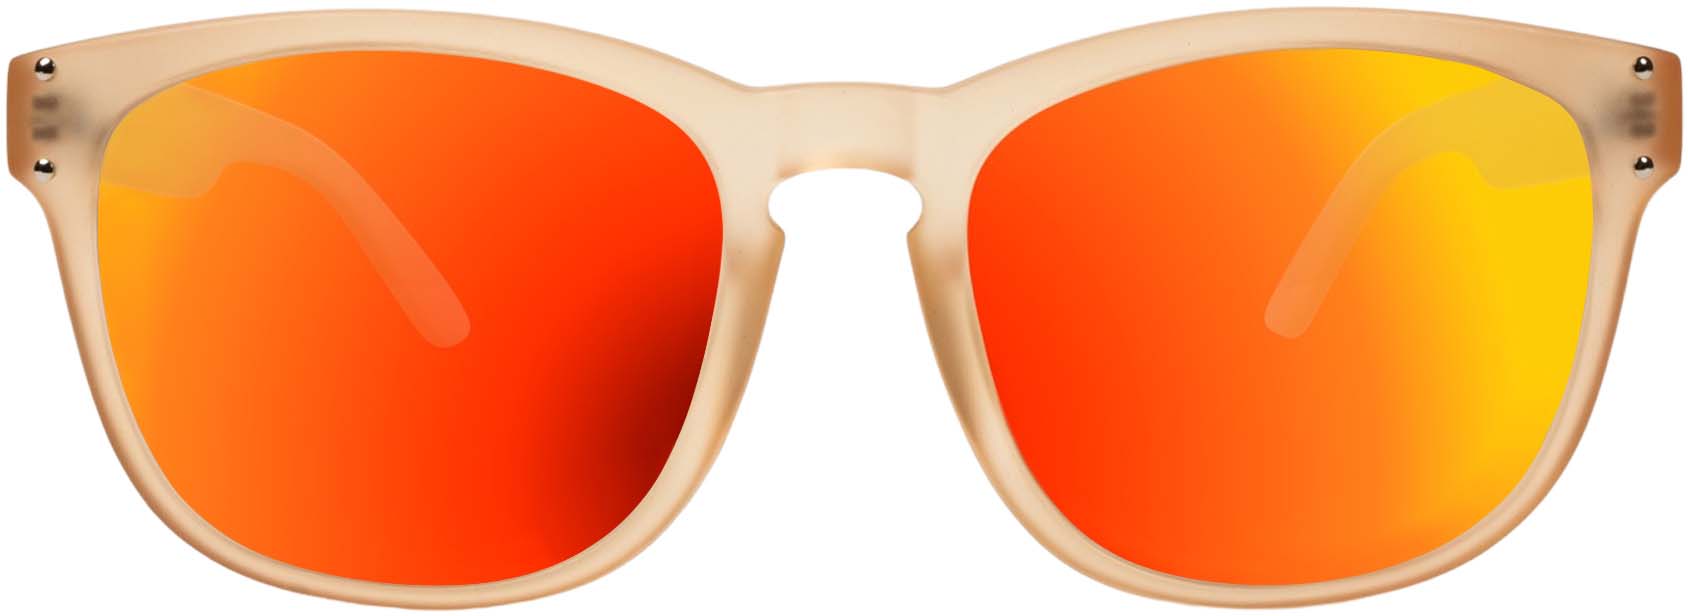 RLVNT Sunchaser Series Sunglasses